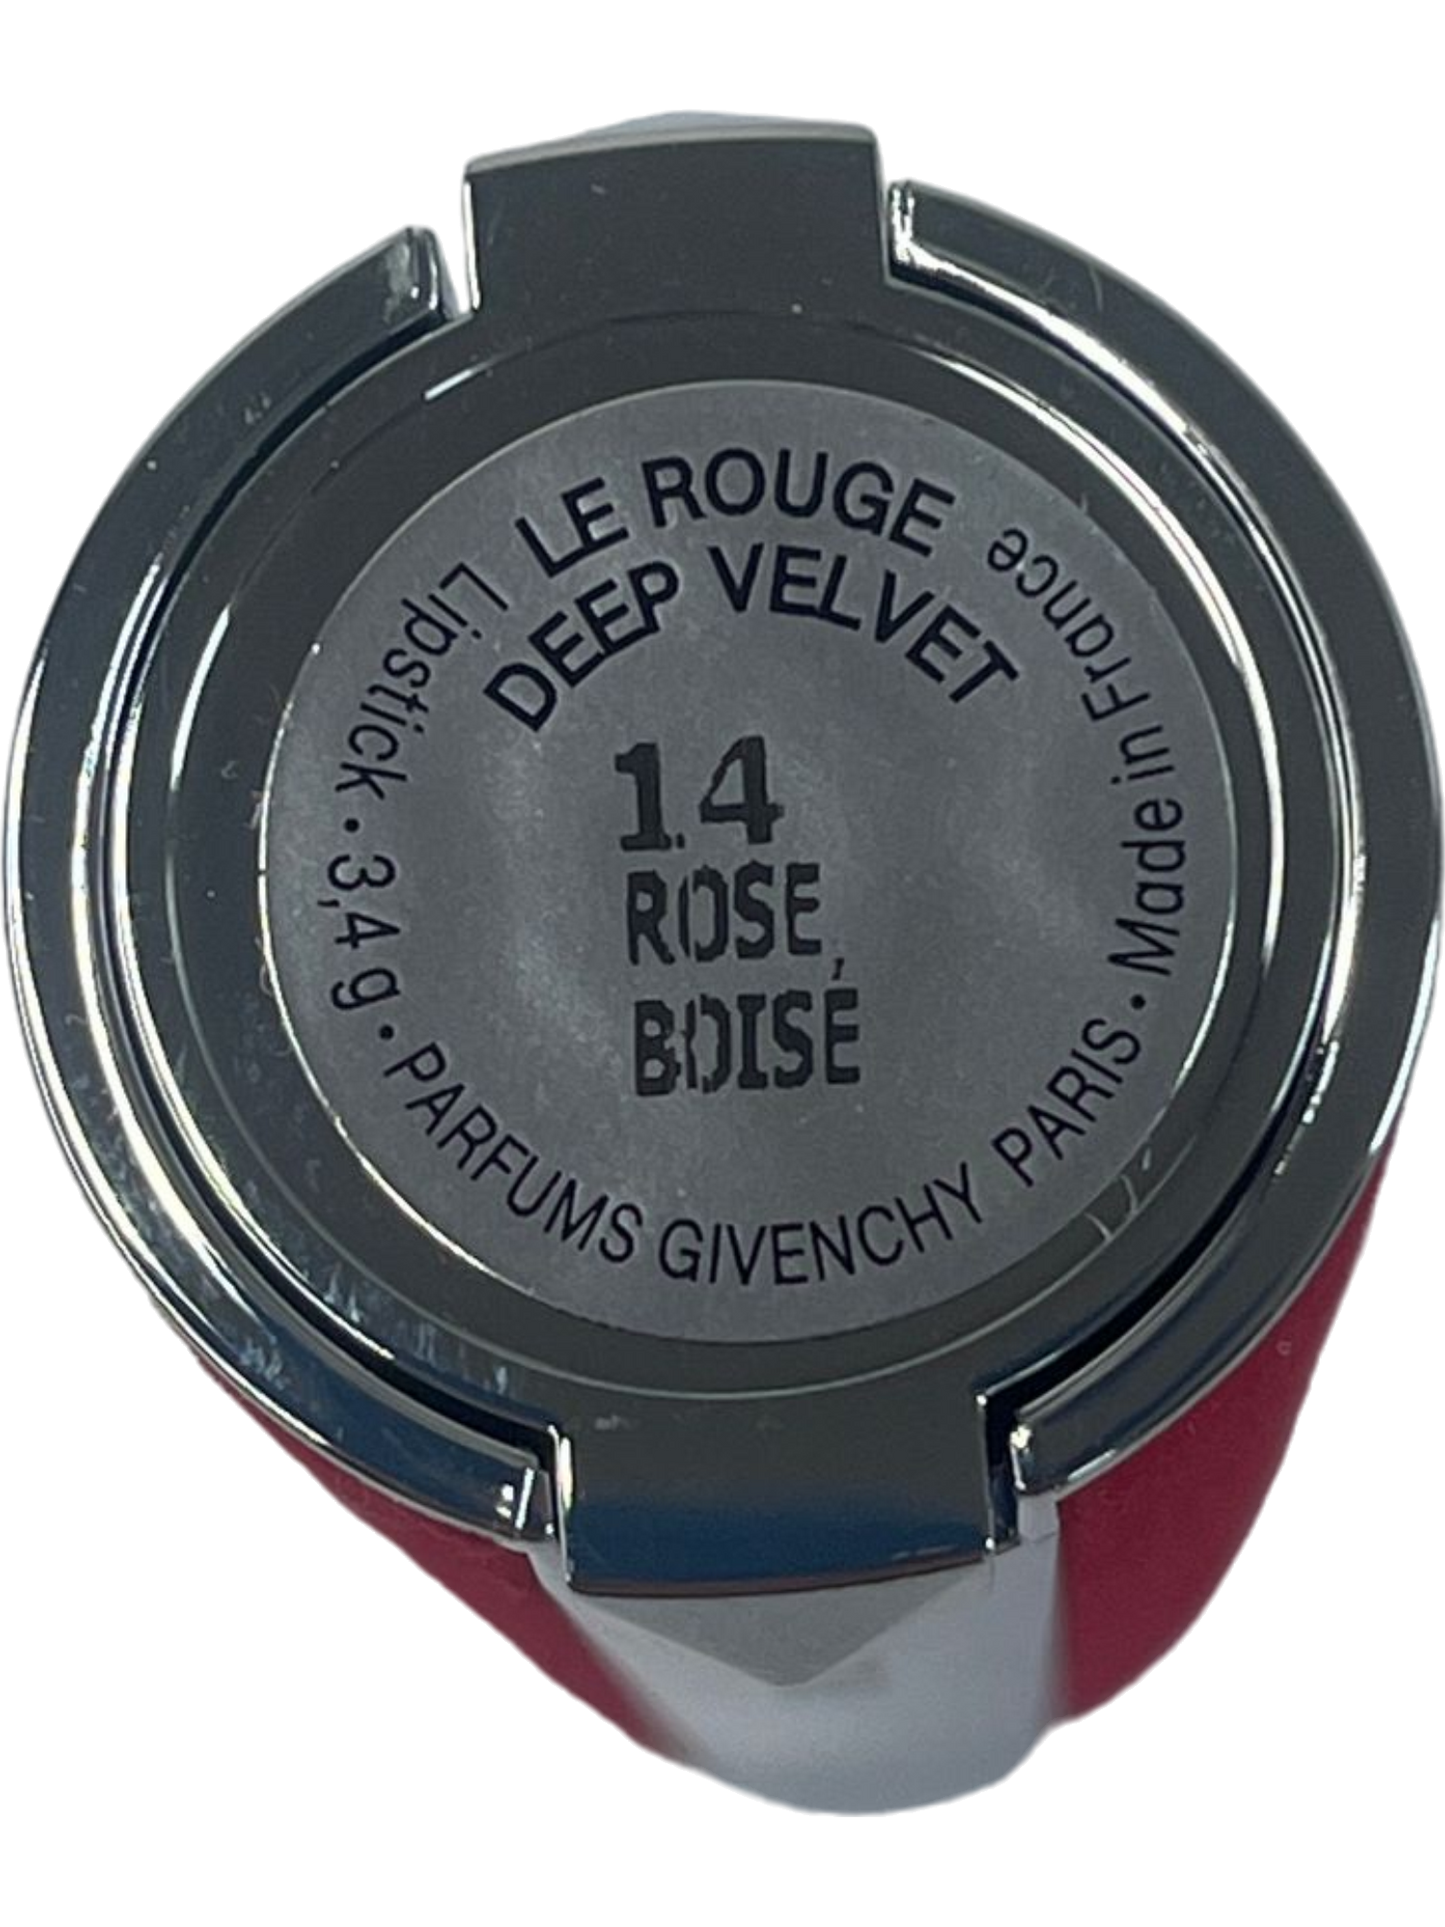 Givenchy Rose BJDSE Le Rouge Deep Velvet Lipstick New UK